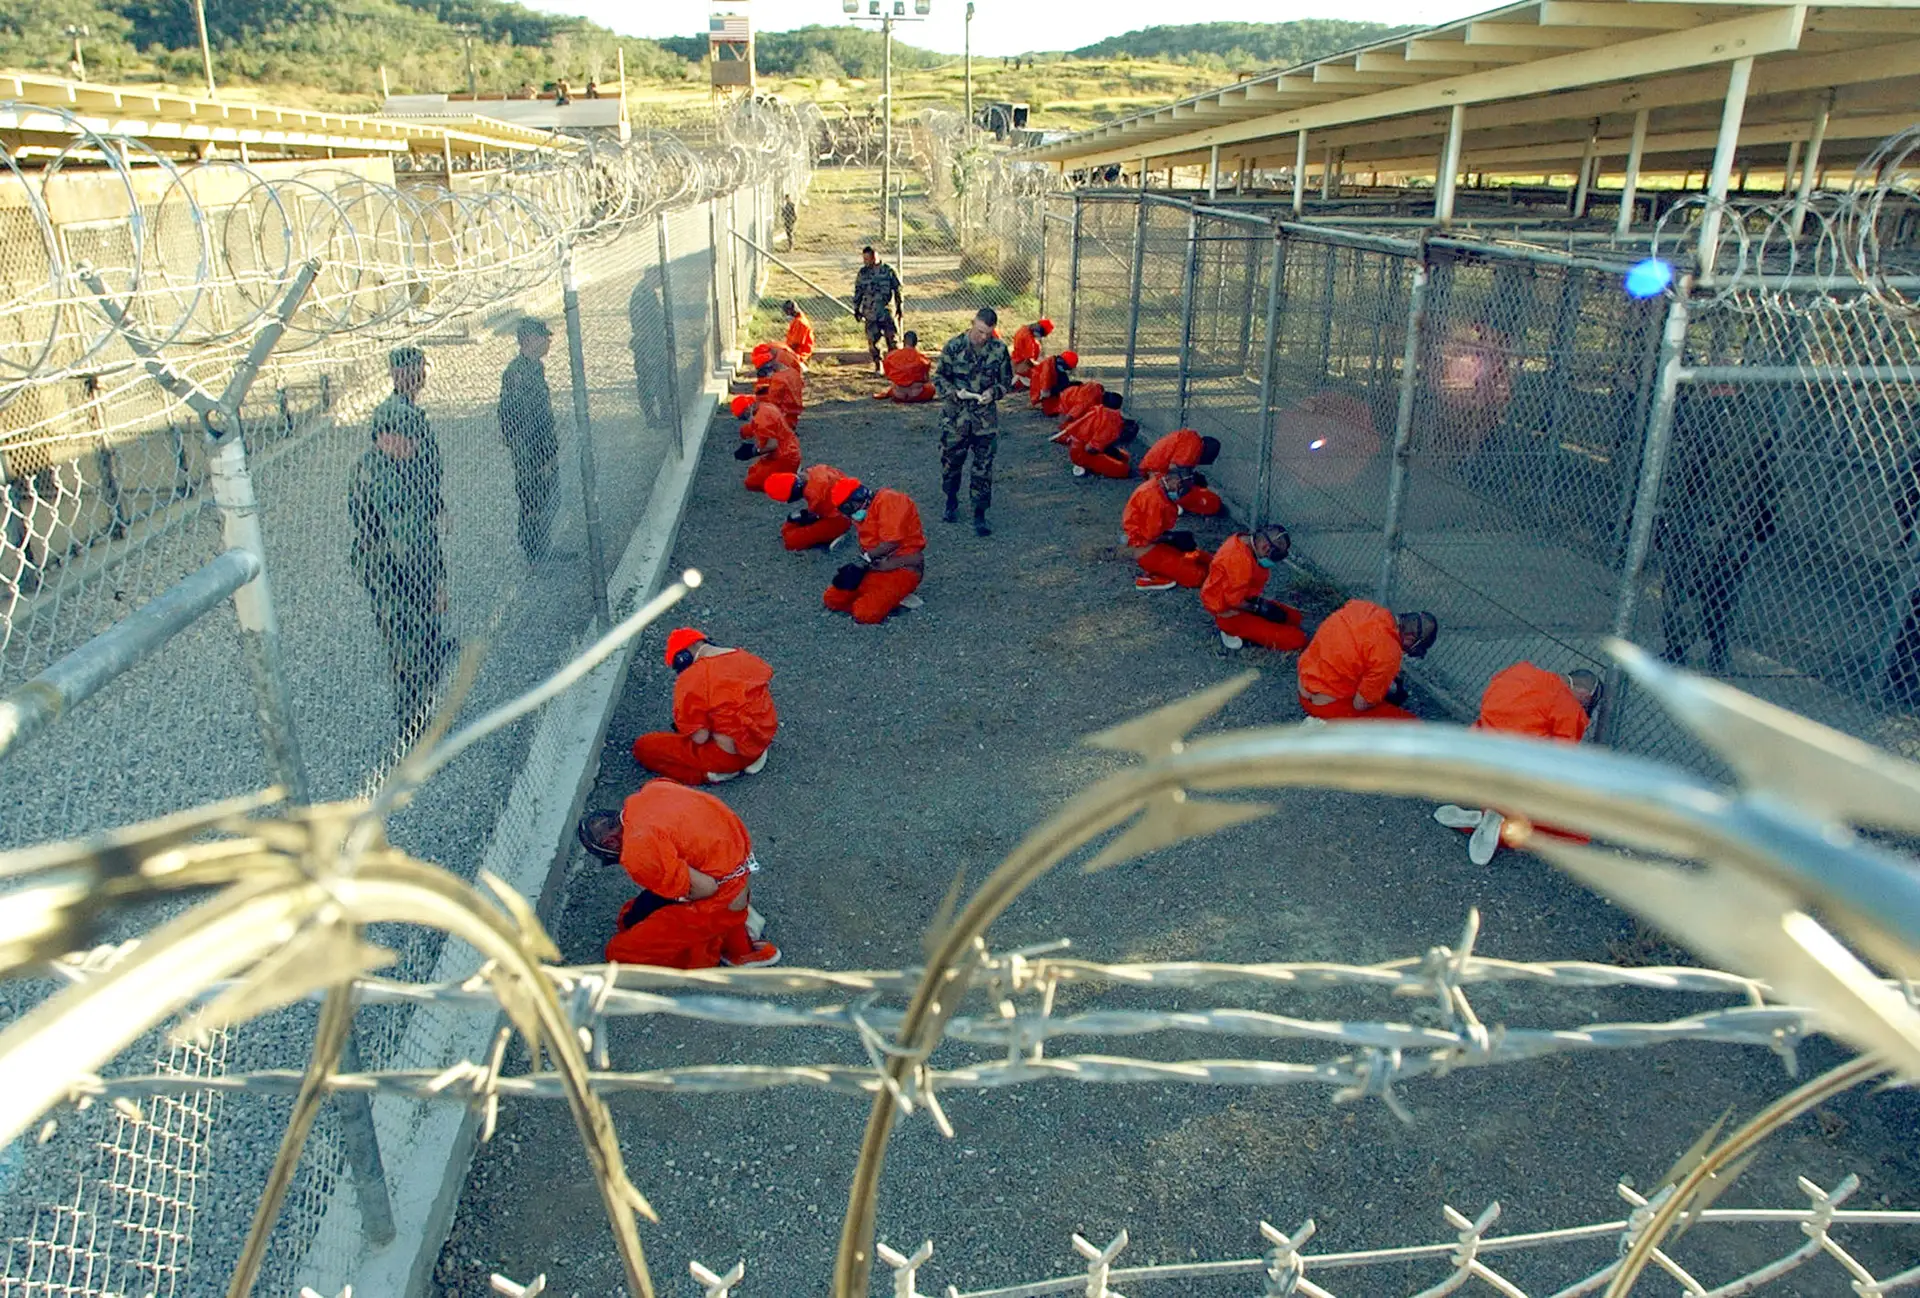 Os fatos cor de laranja dos detidos tornaram-se símbolo da infâmia que Guantánamo se tornou